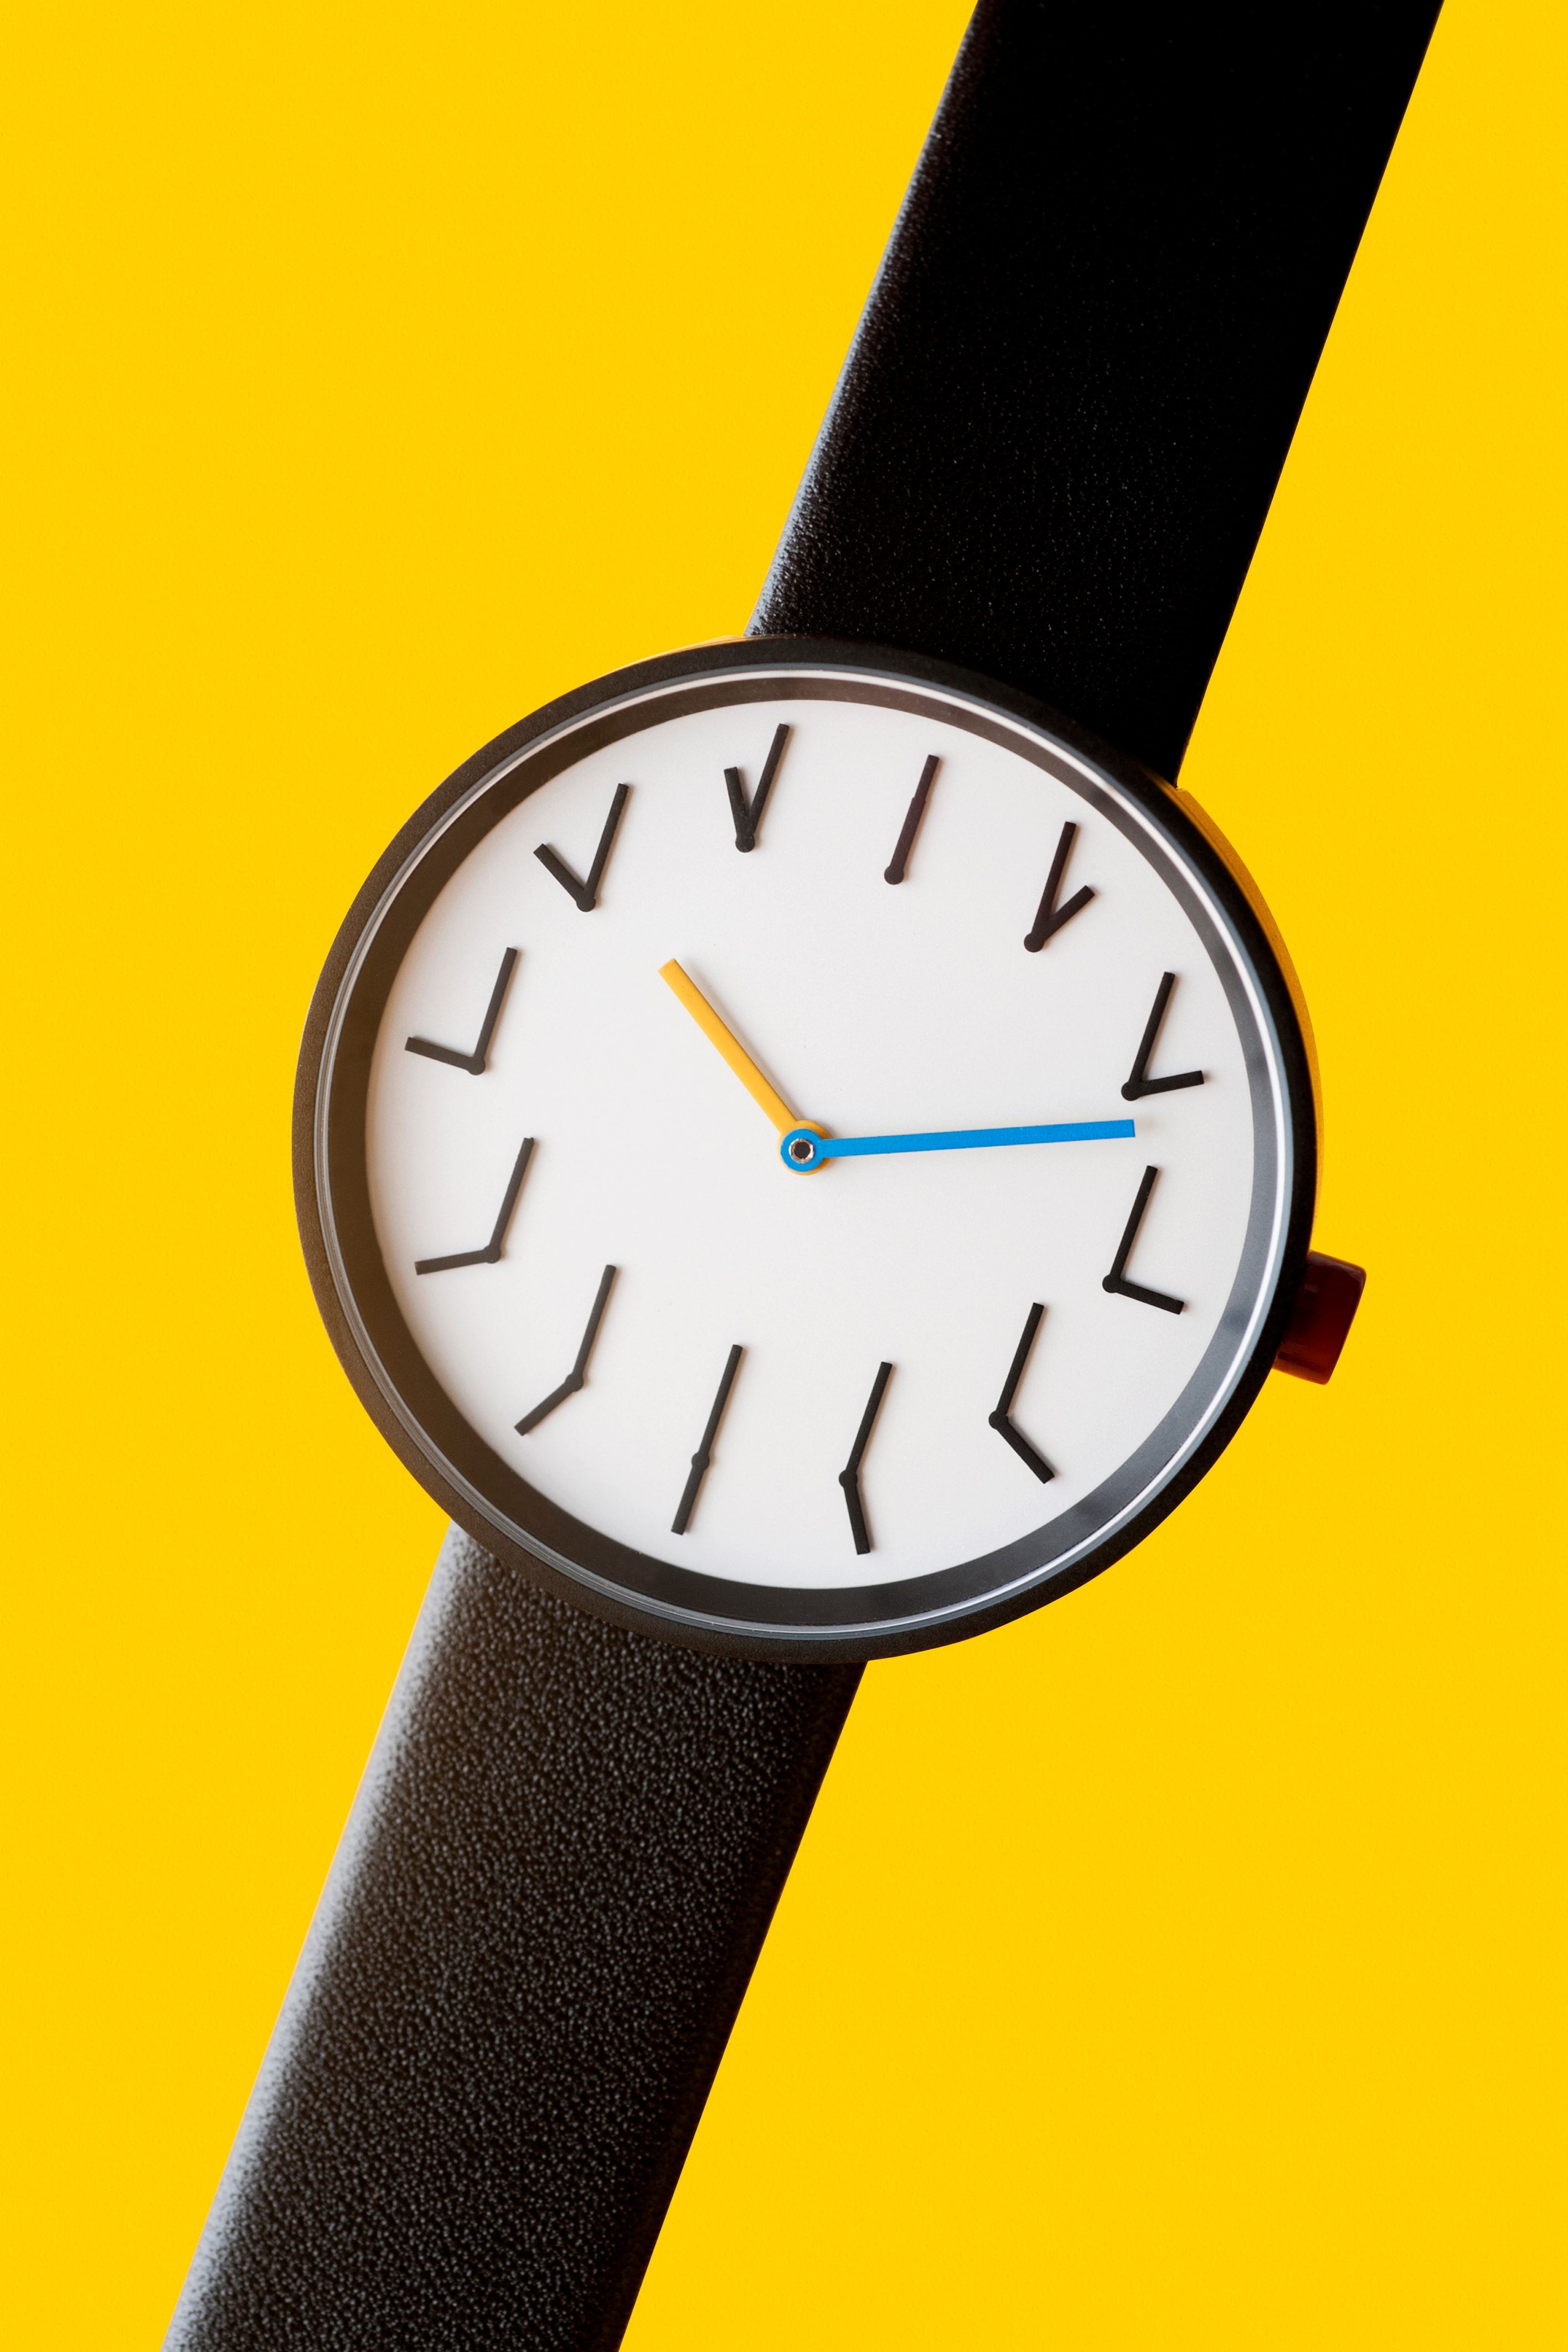 Anicorn 聯乘 MoMA 發佈獨佔 TTT 系列 Redundant Watch